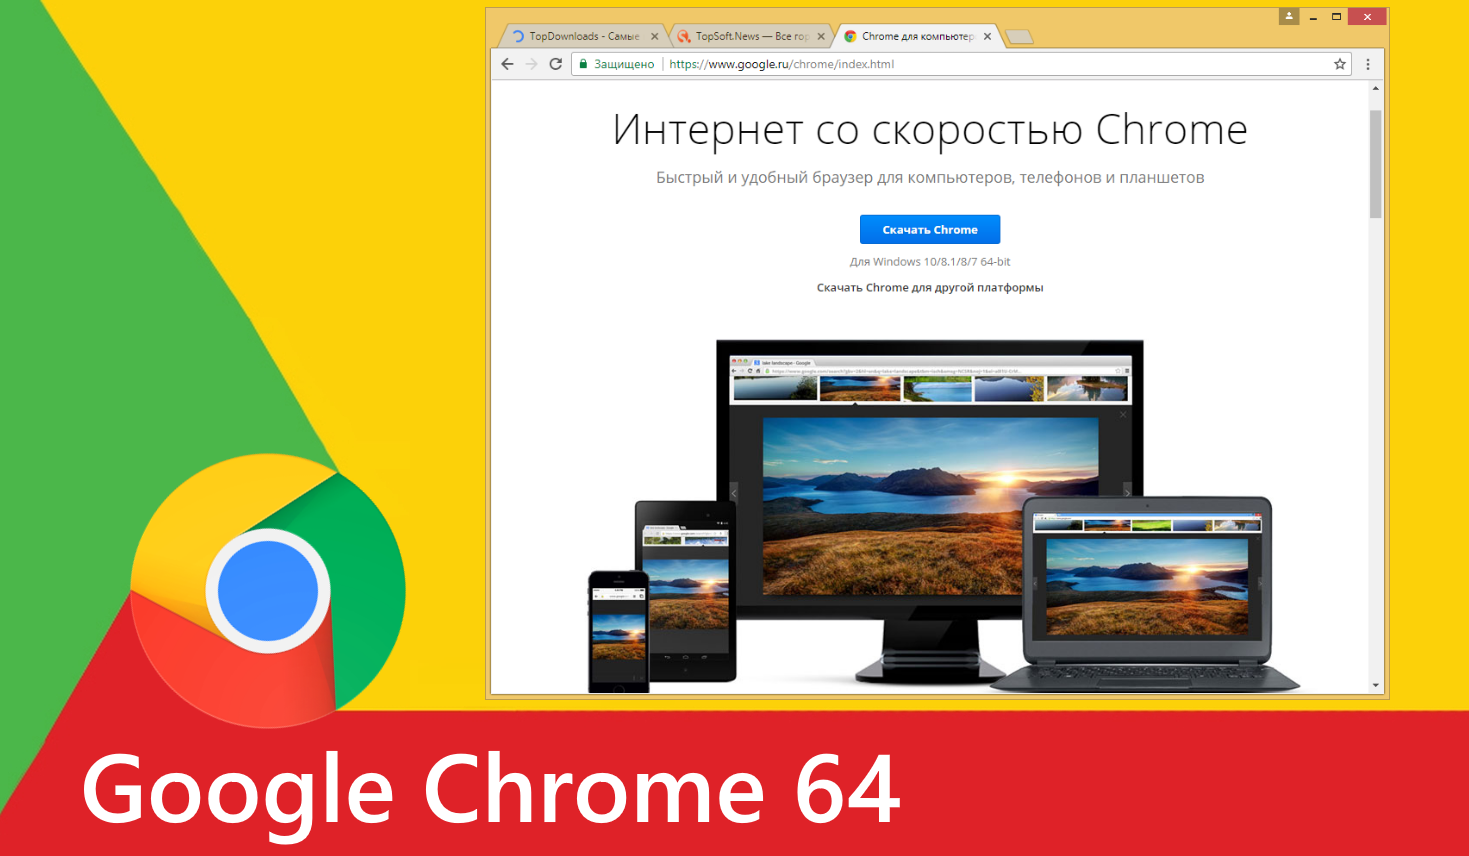 Chrome 64